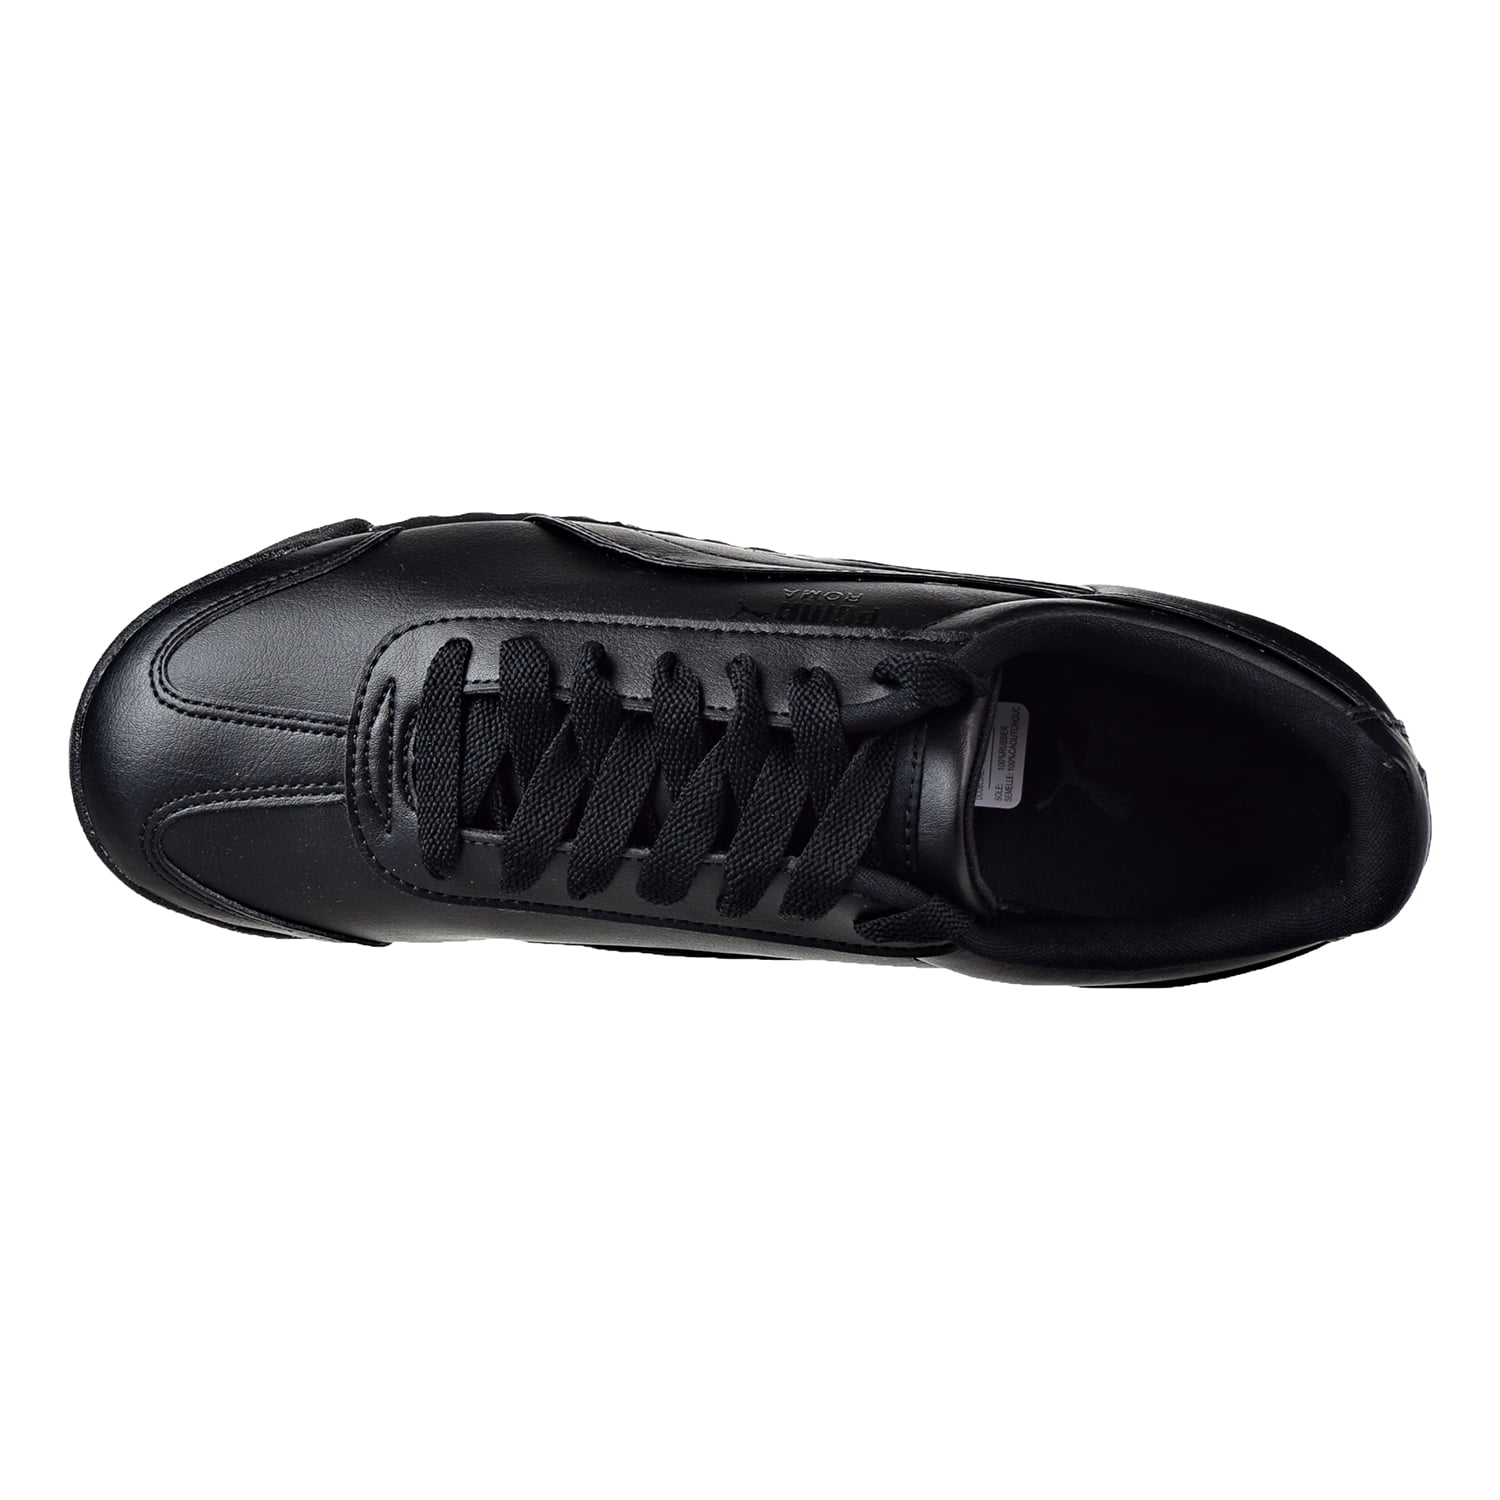 puma 353572-17: men's black/black roma basic fashion sneakers (9.5 